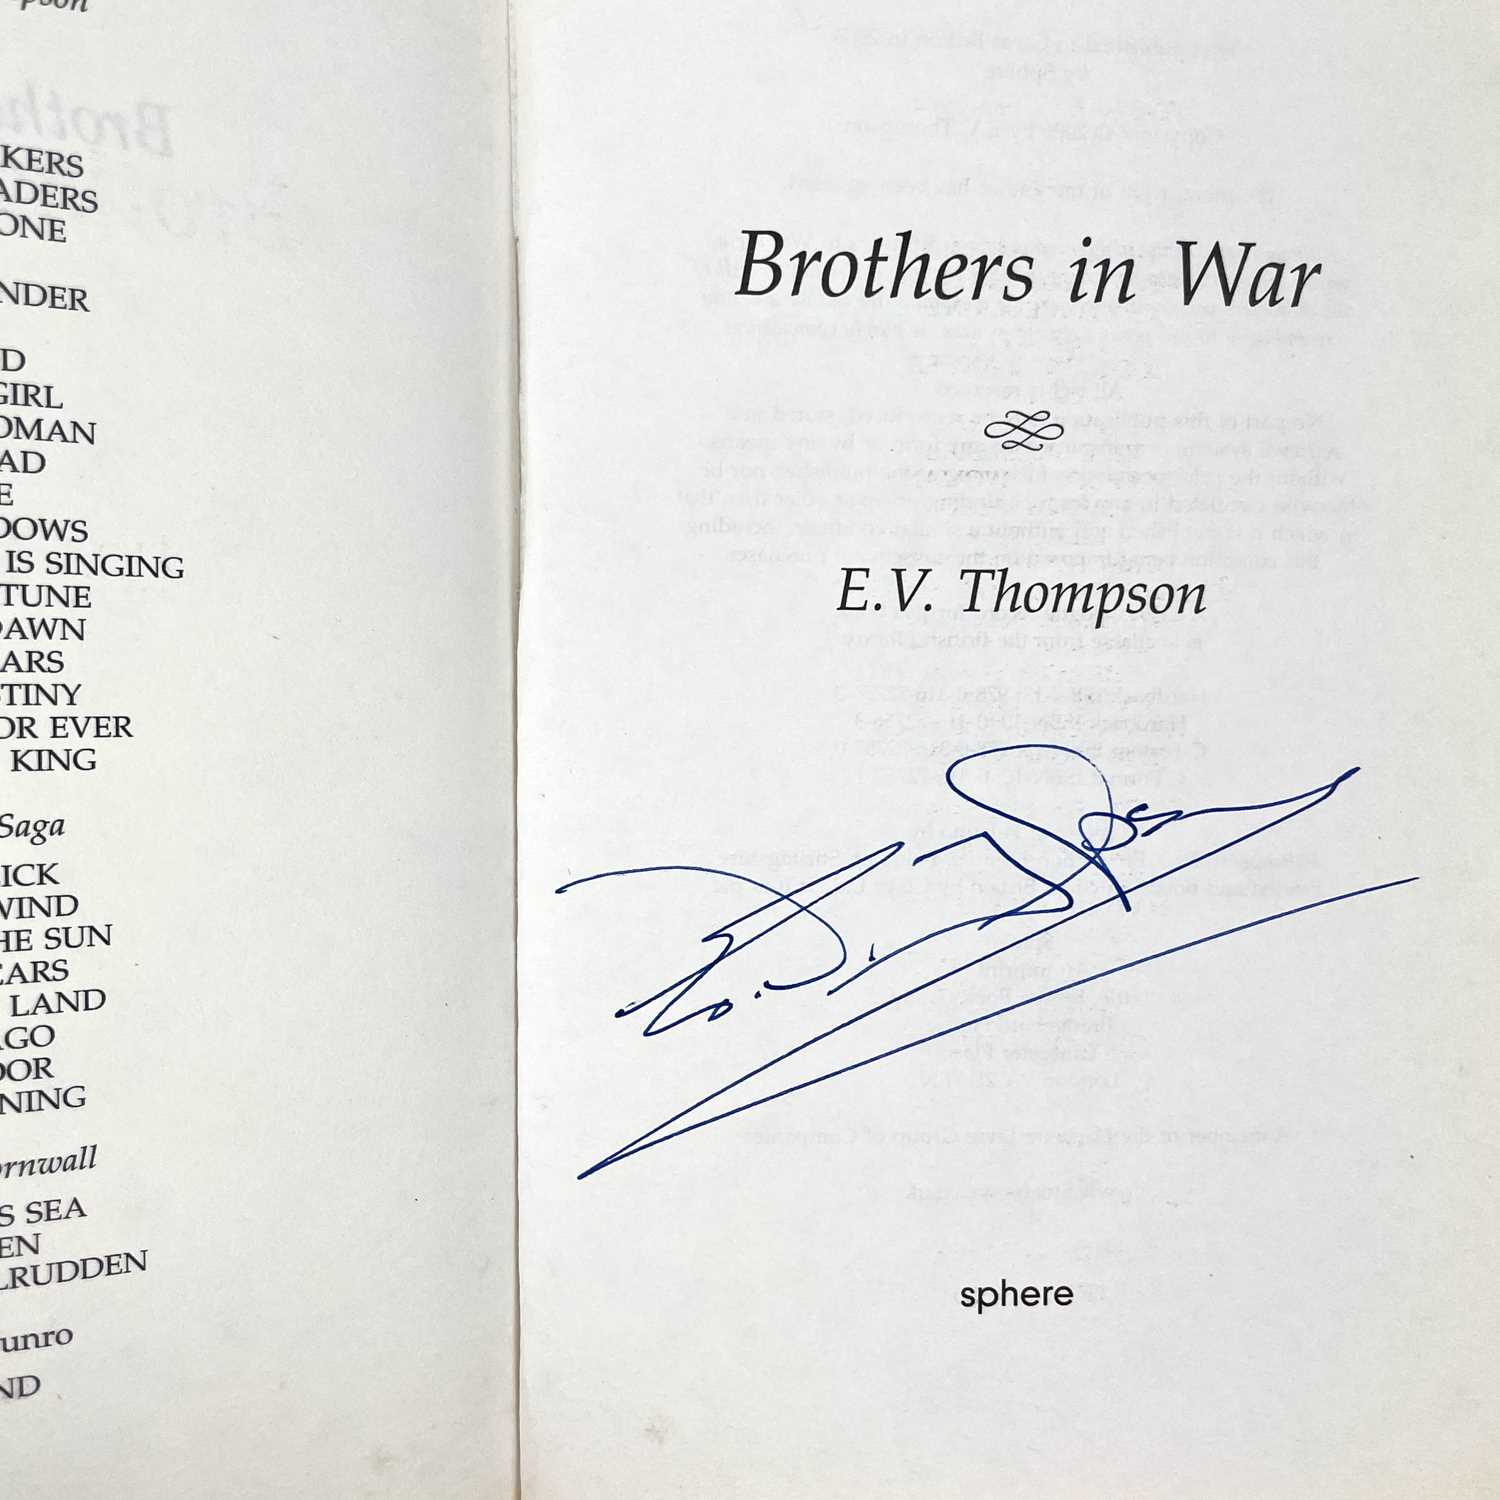 E. V. THOMPSON. Six signed works. - Image 6 of 10